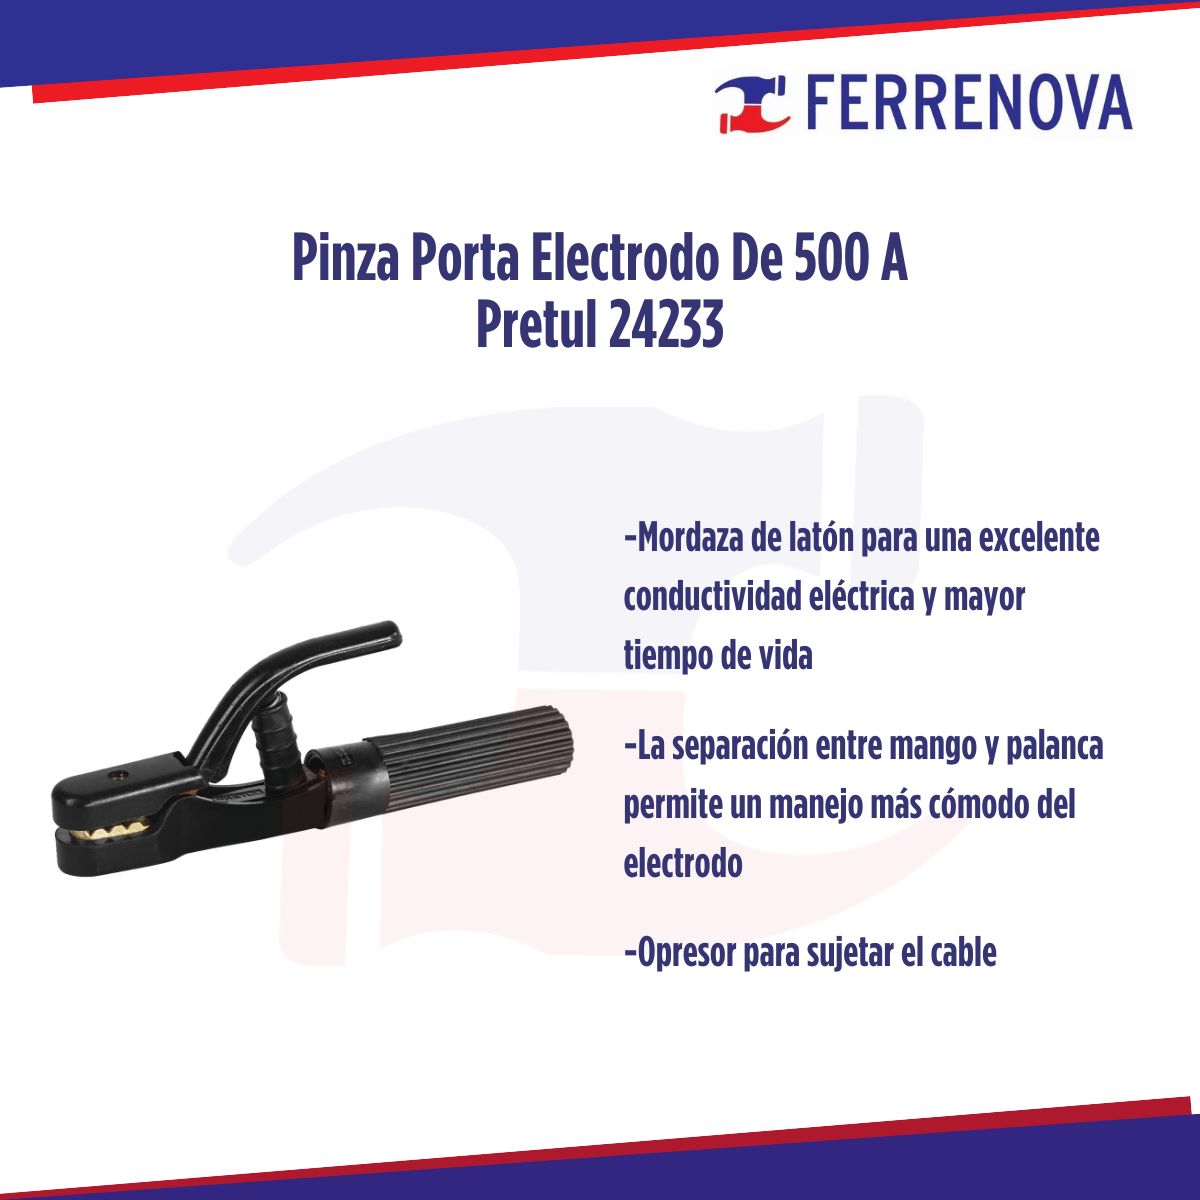 Pinza Porta Electrodo De 500 A Pretul 24233